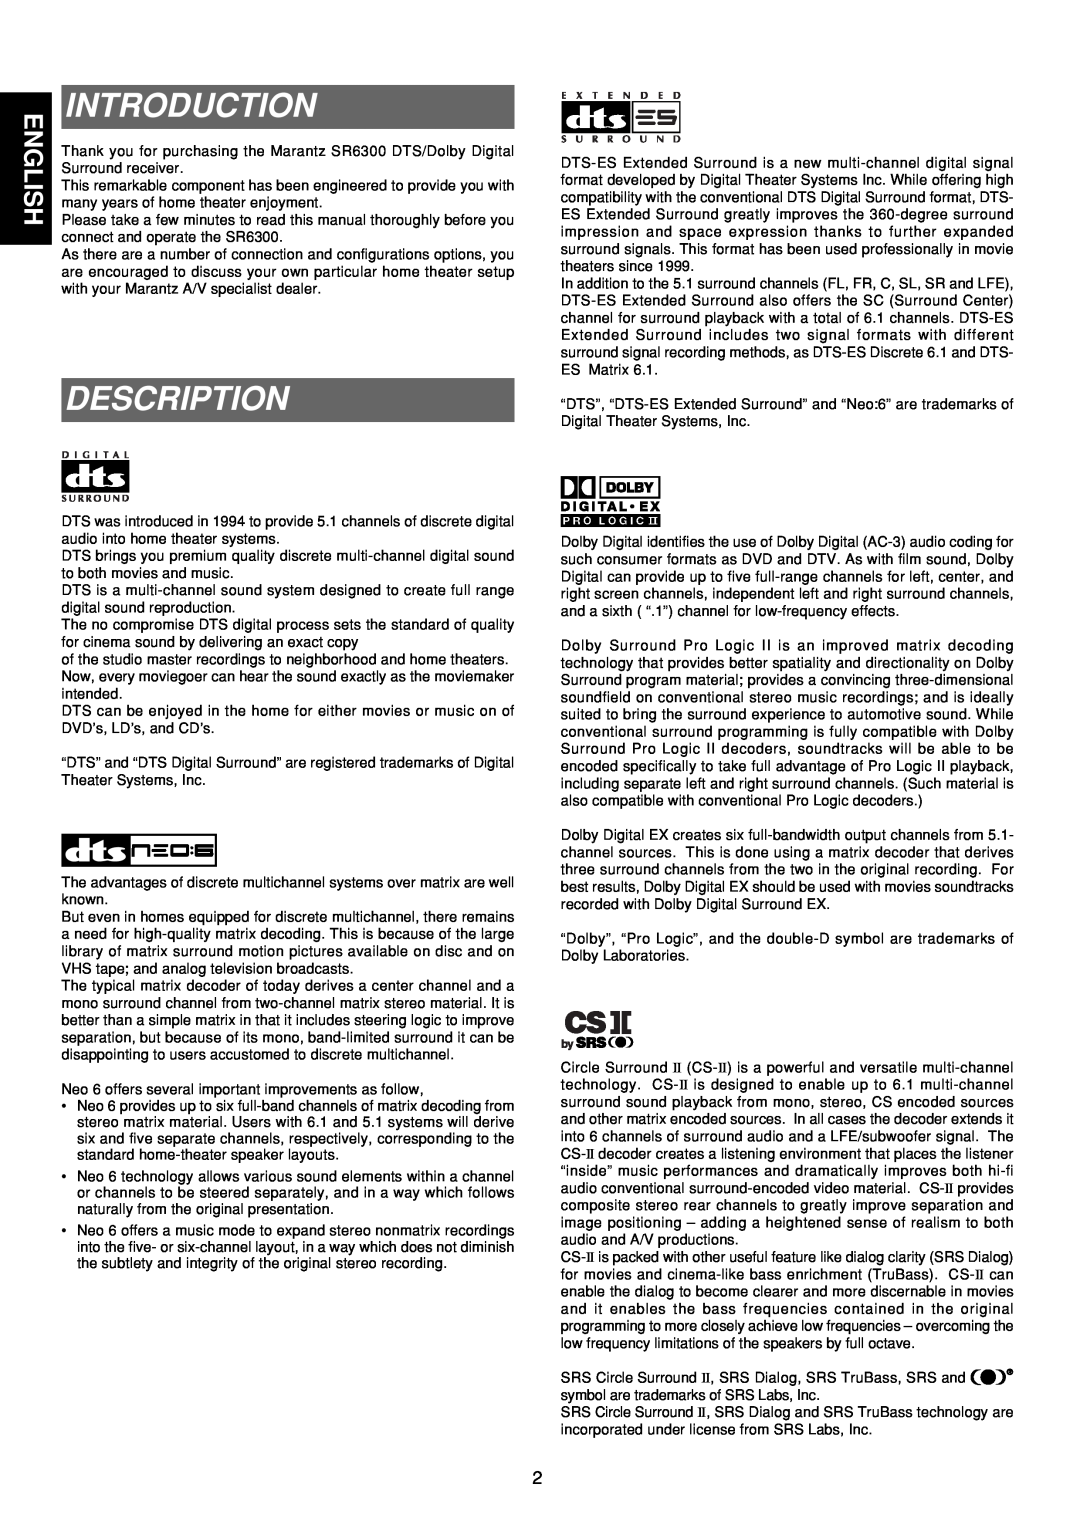 Marantz SR6300 manual Introduction, Description 